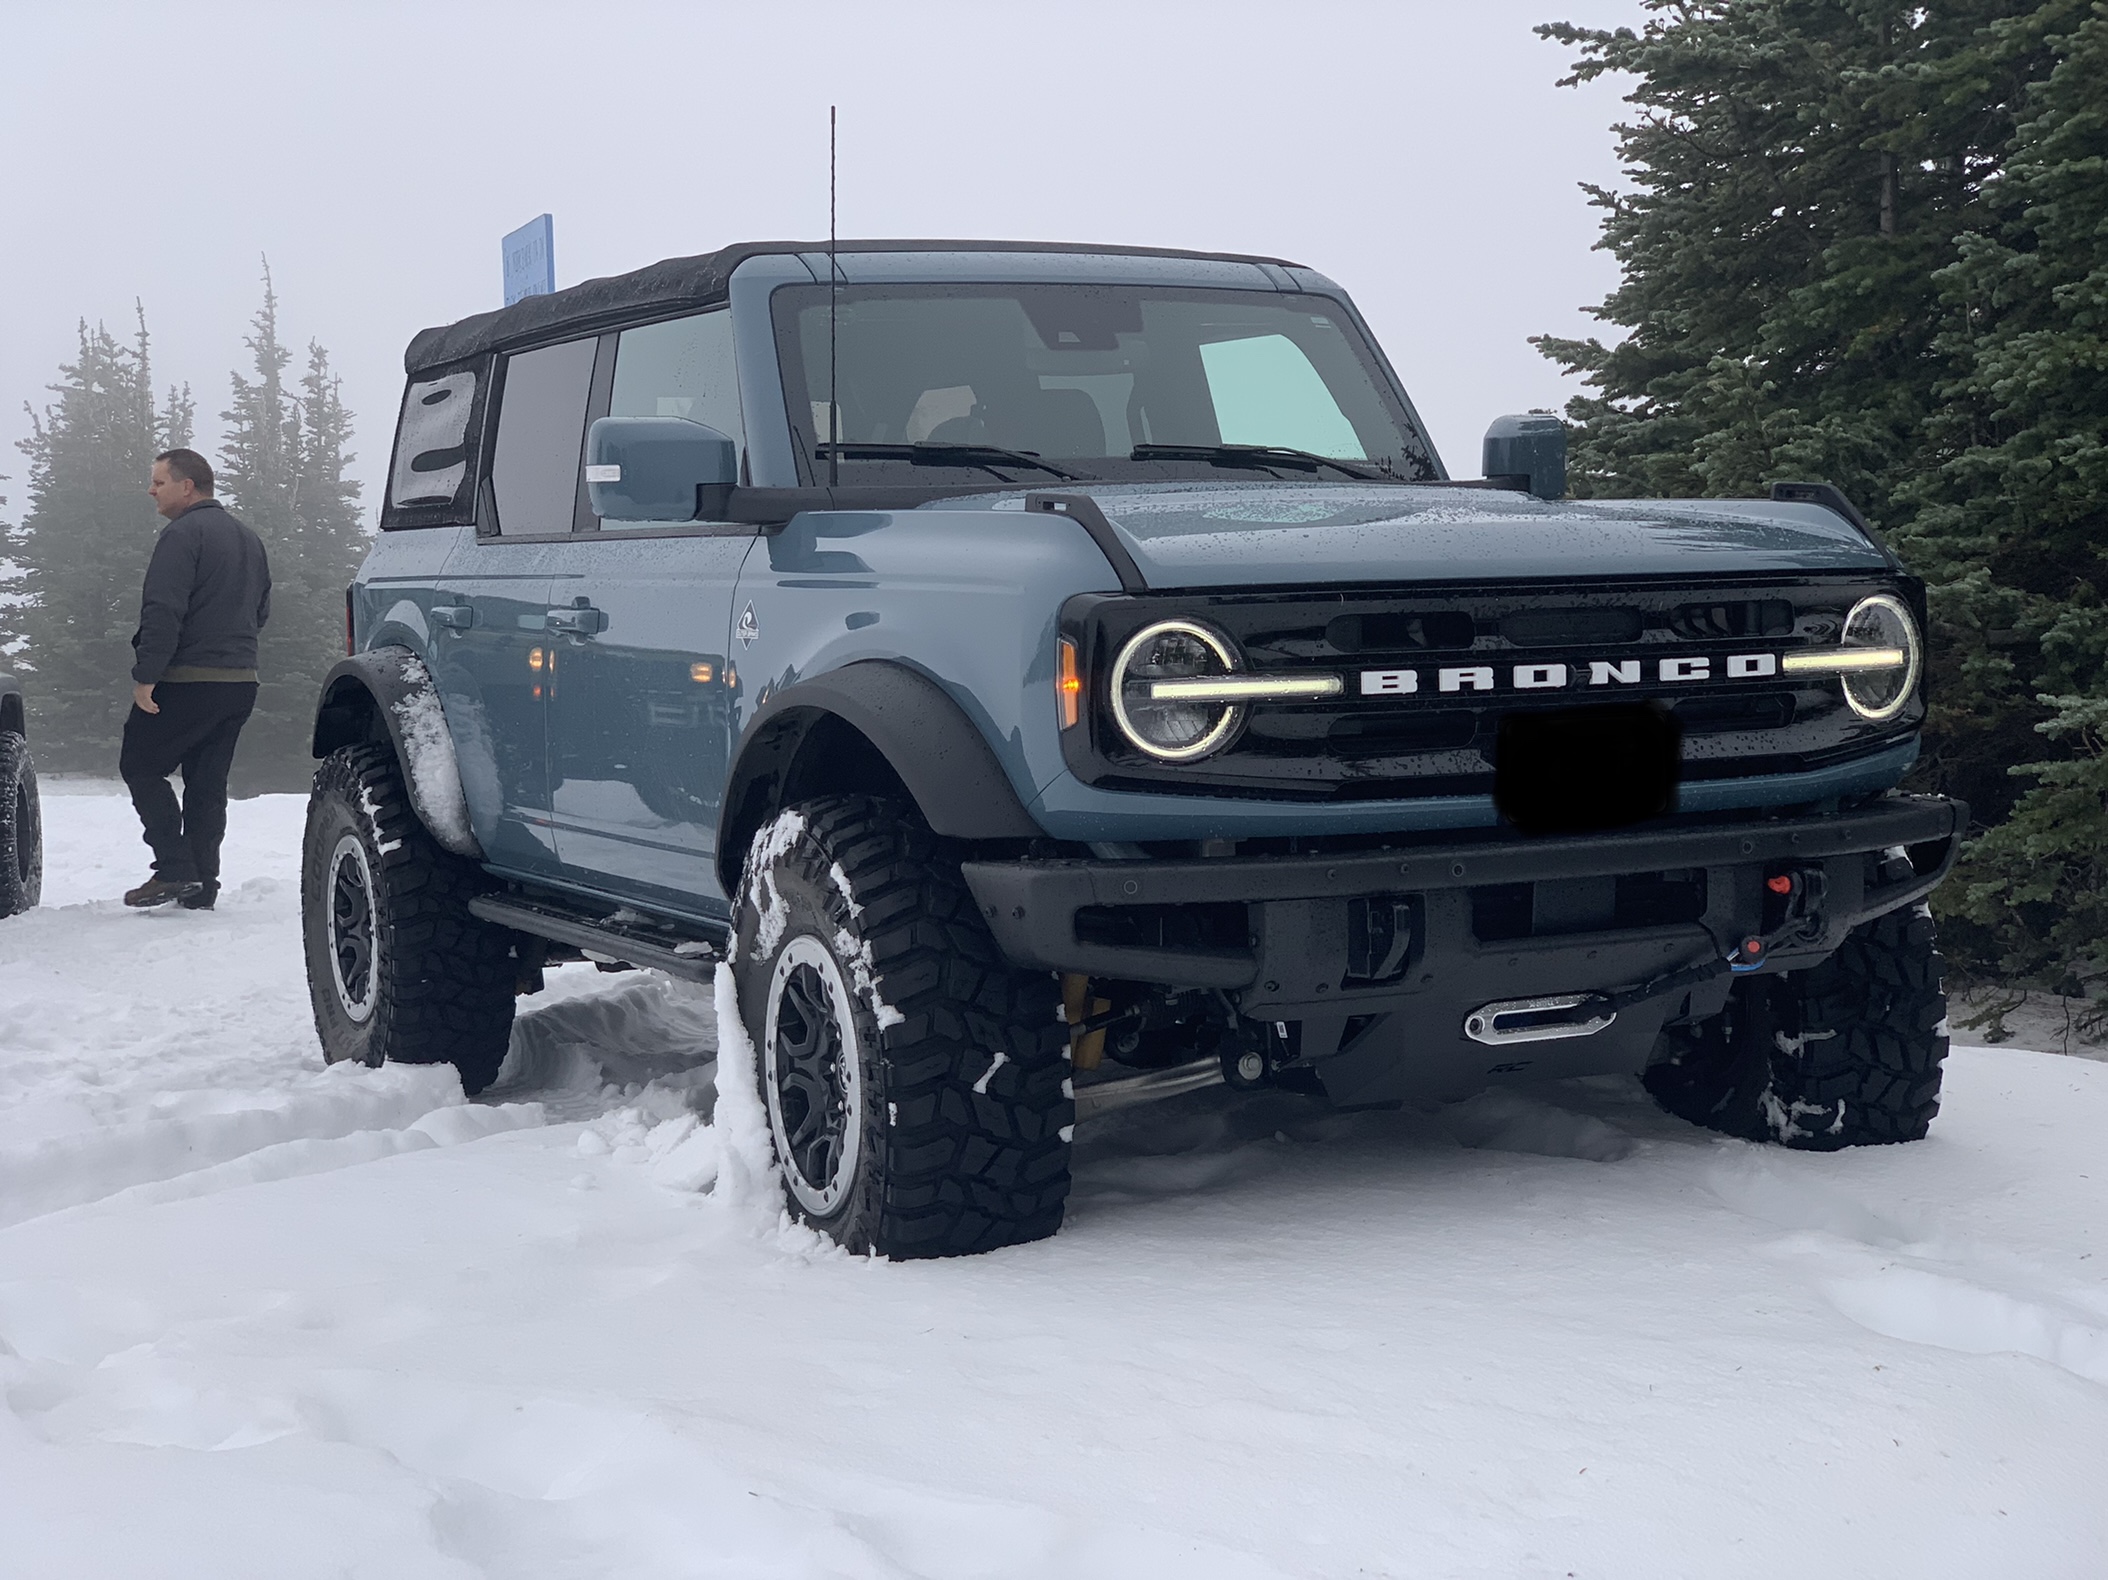 Ford Bronco Show us your Bronco snow pics!! ☃️❄️🥶 FB77891C-827F-4BCA-B3E4-3A27A838A8AB